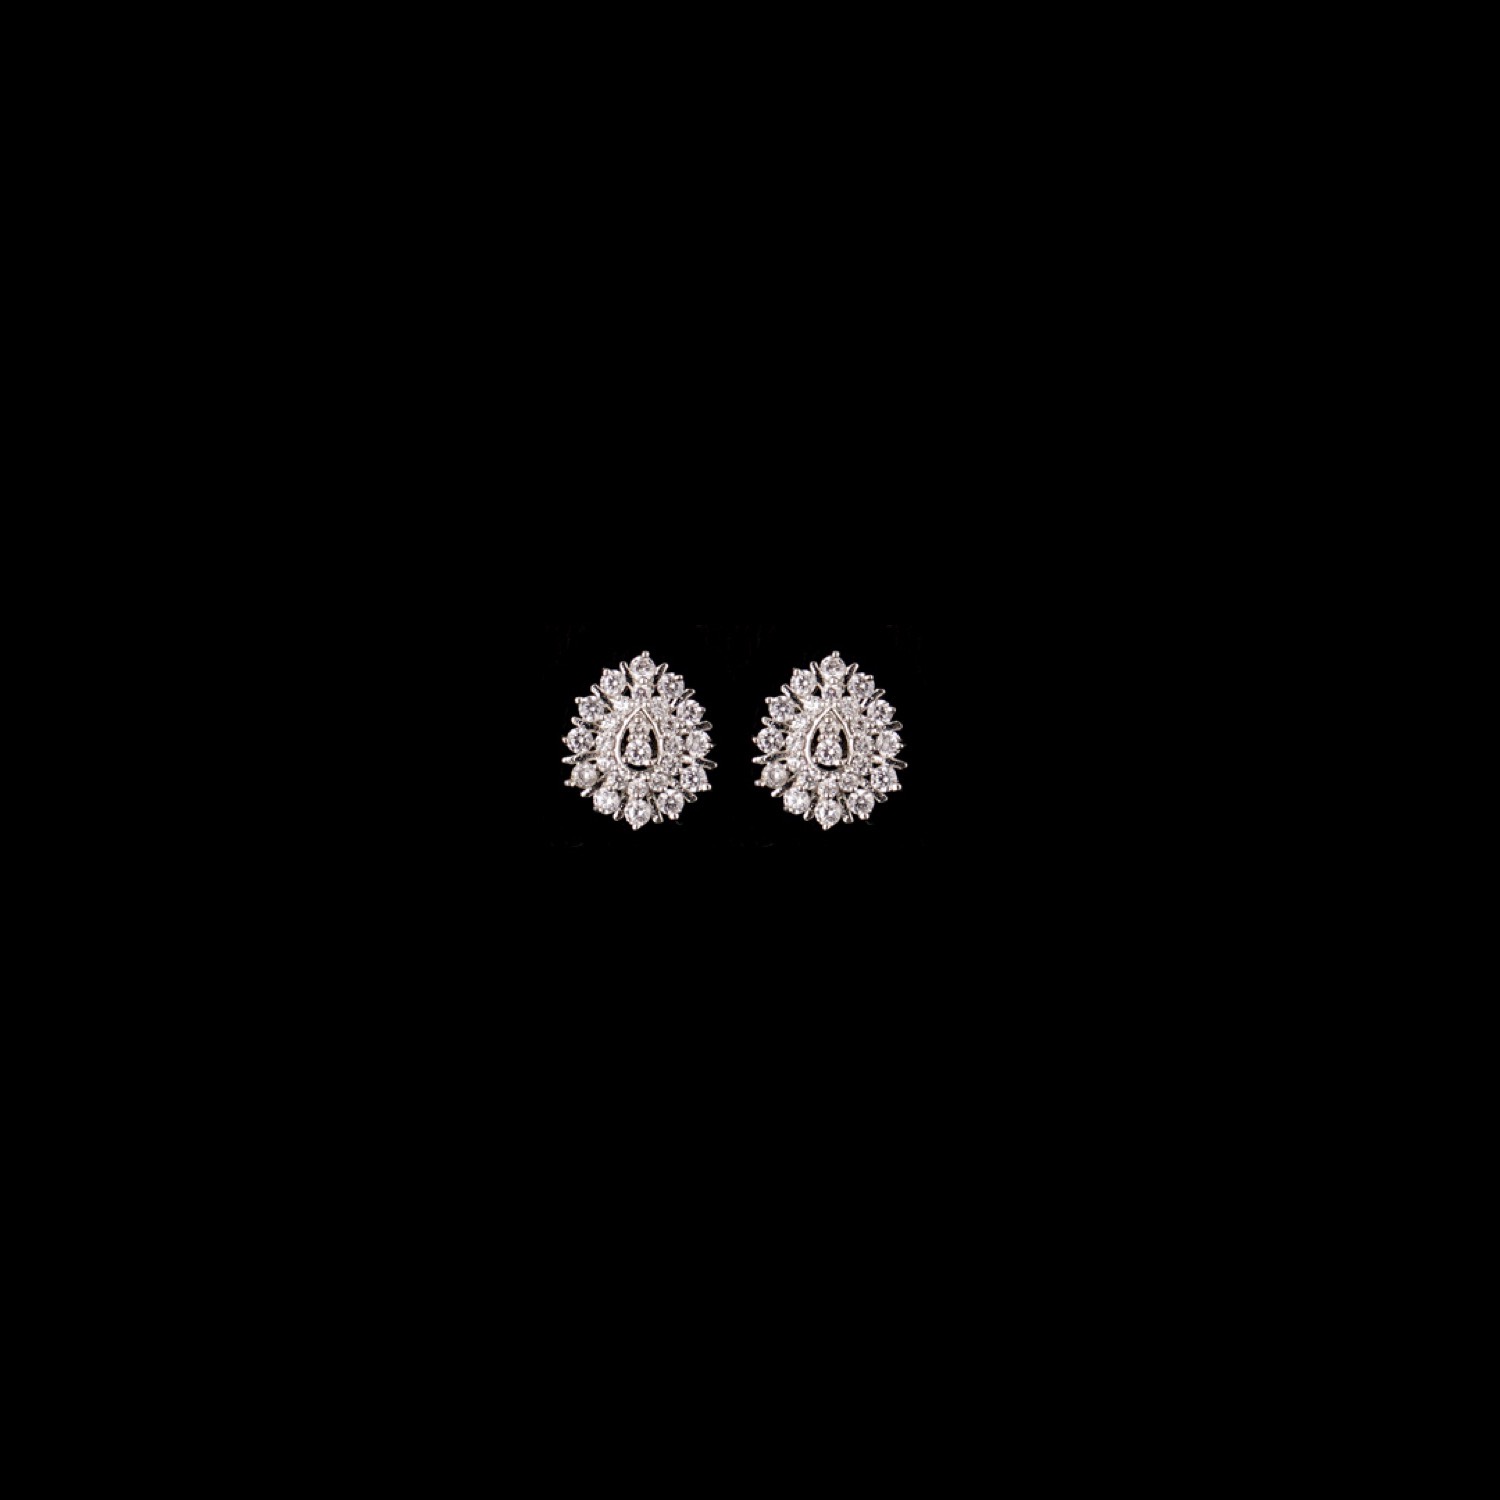 varam_earrings_102022_white_stone_studded_pear_shaped_silver_earrings-1